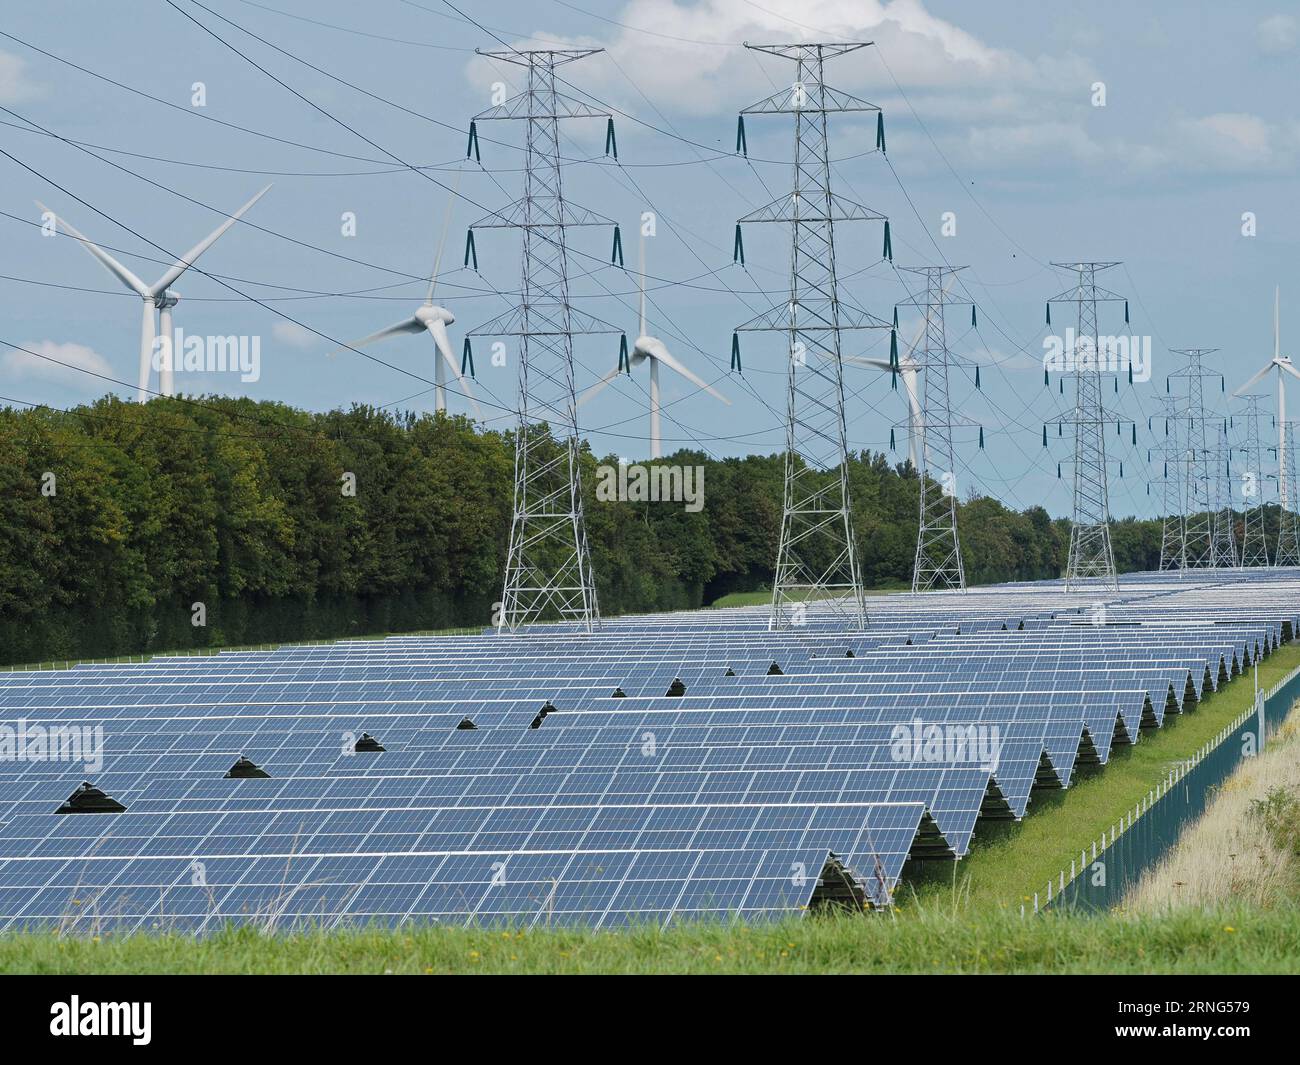 La transizione energetica verde usa molto spazio. Questa fattoria di pannelli solari è lunga diversi chilometri. Vlissingen, Zelanda, Paesi Bassi. Foto Stock